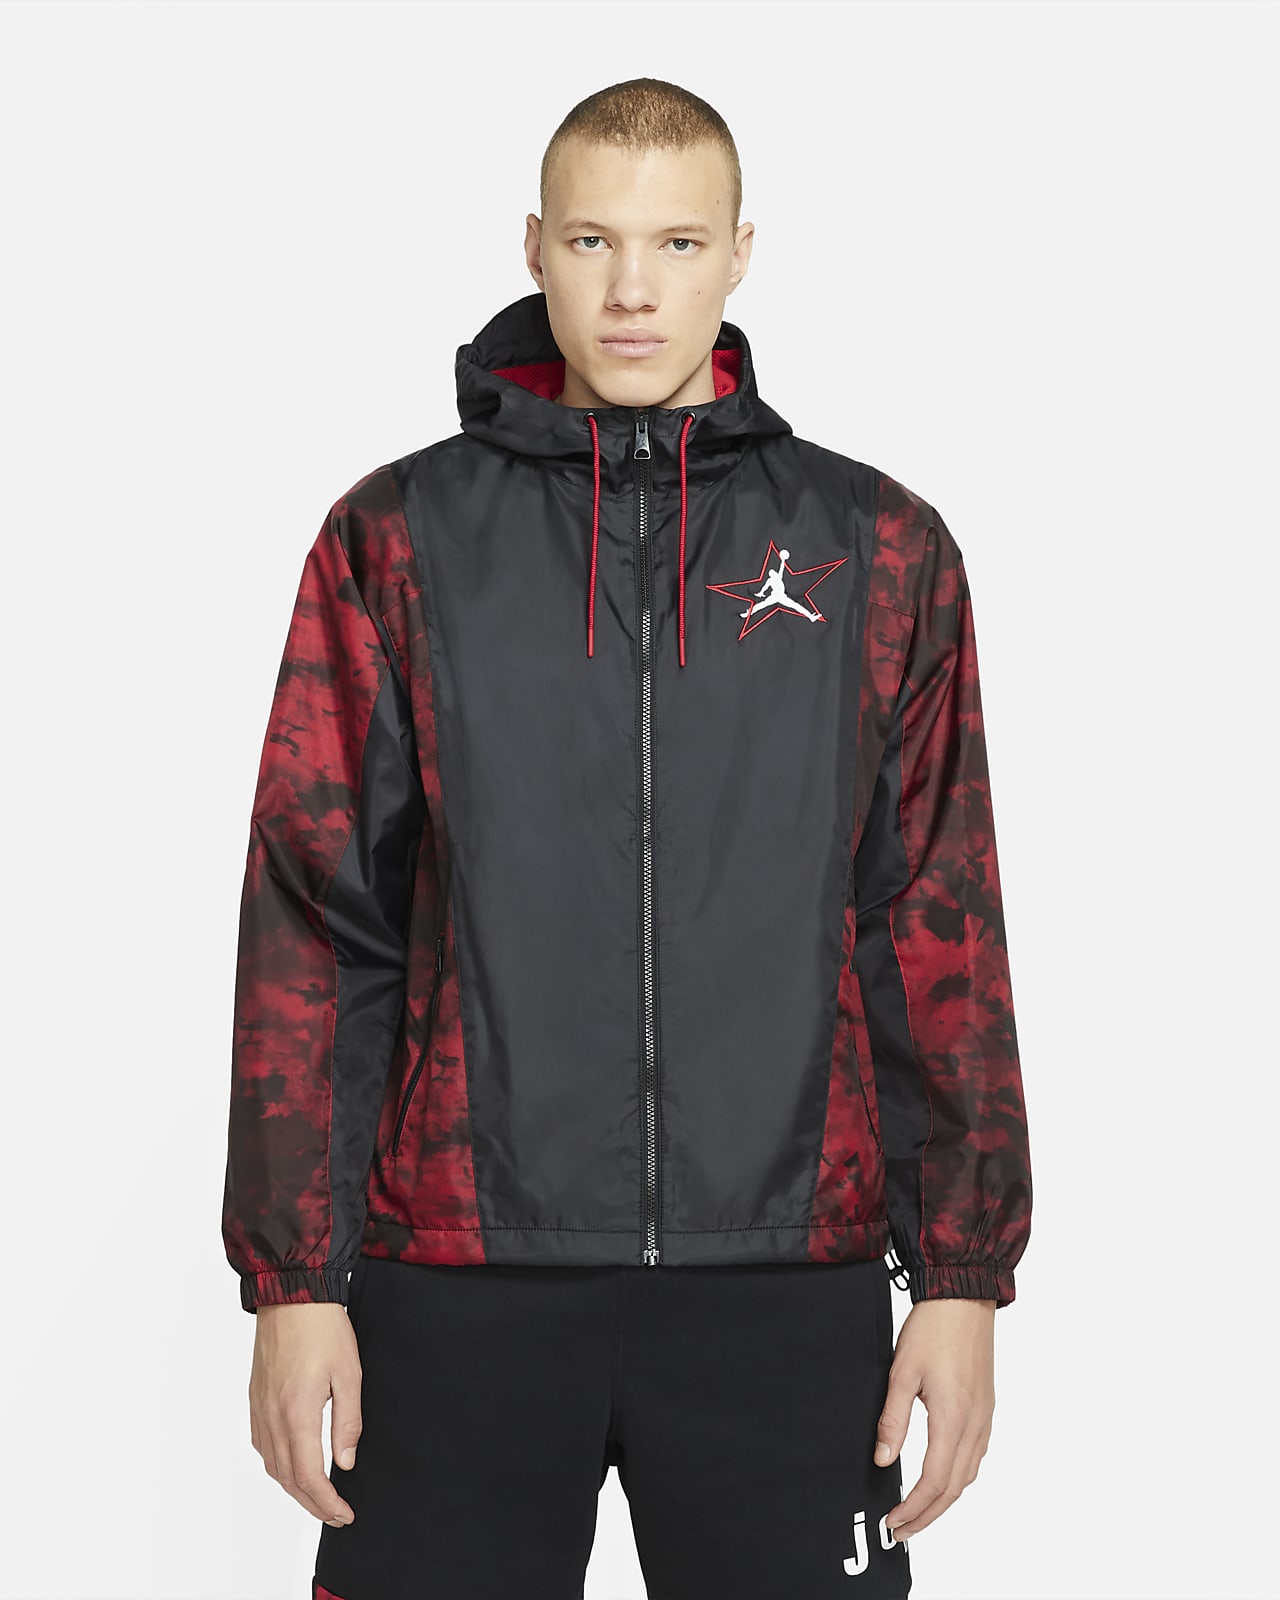 Lightweight Jacket. Nike NZ